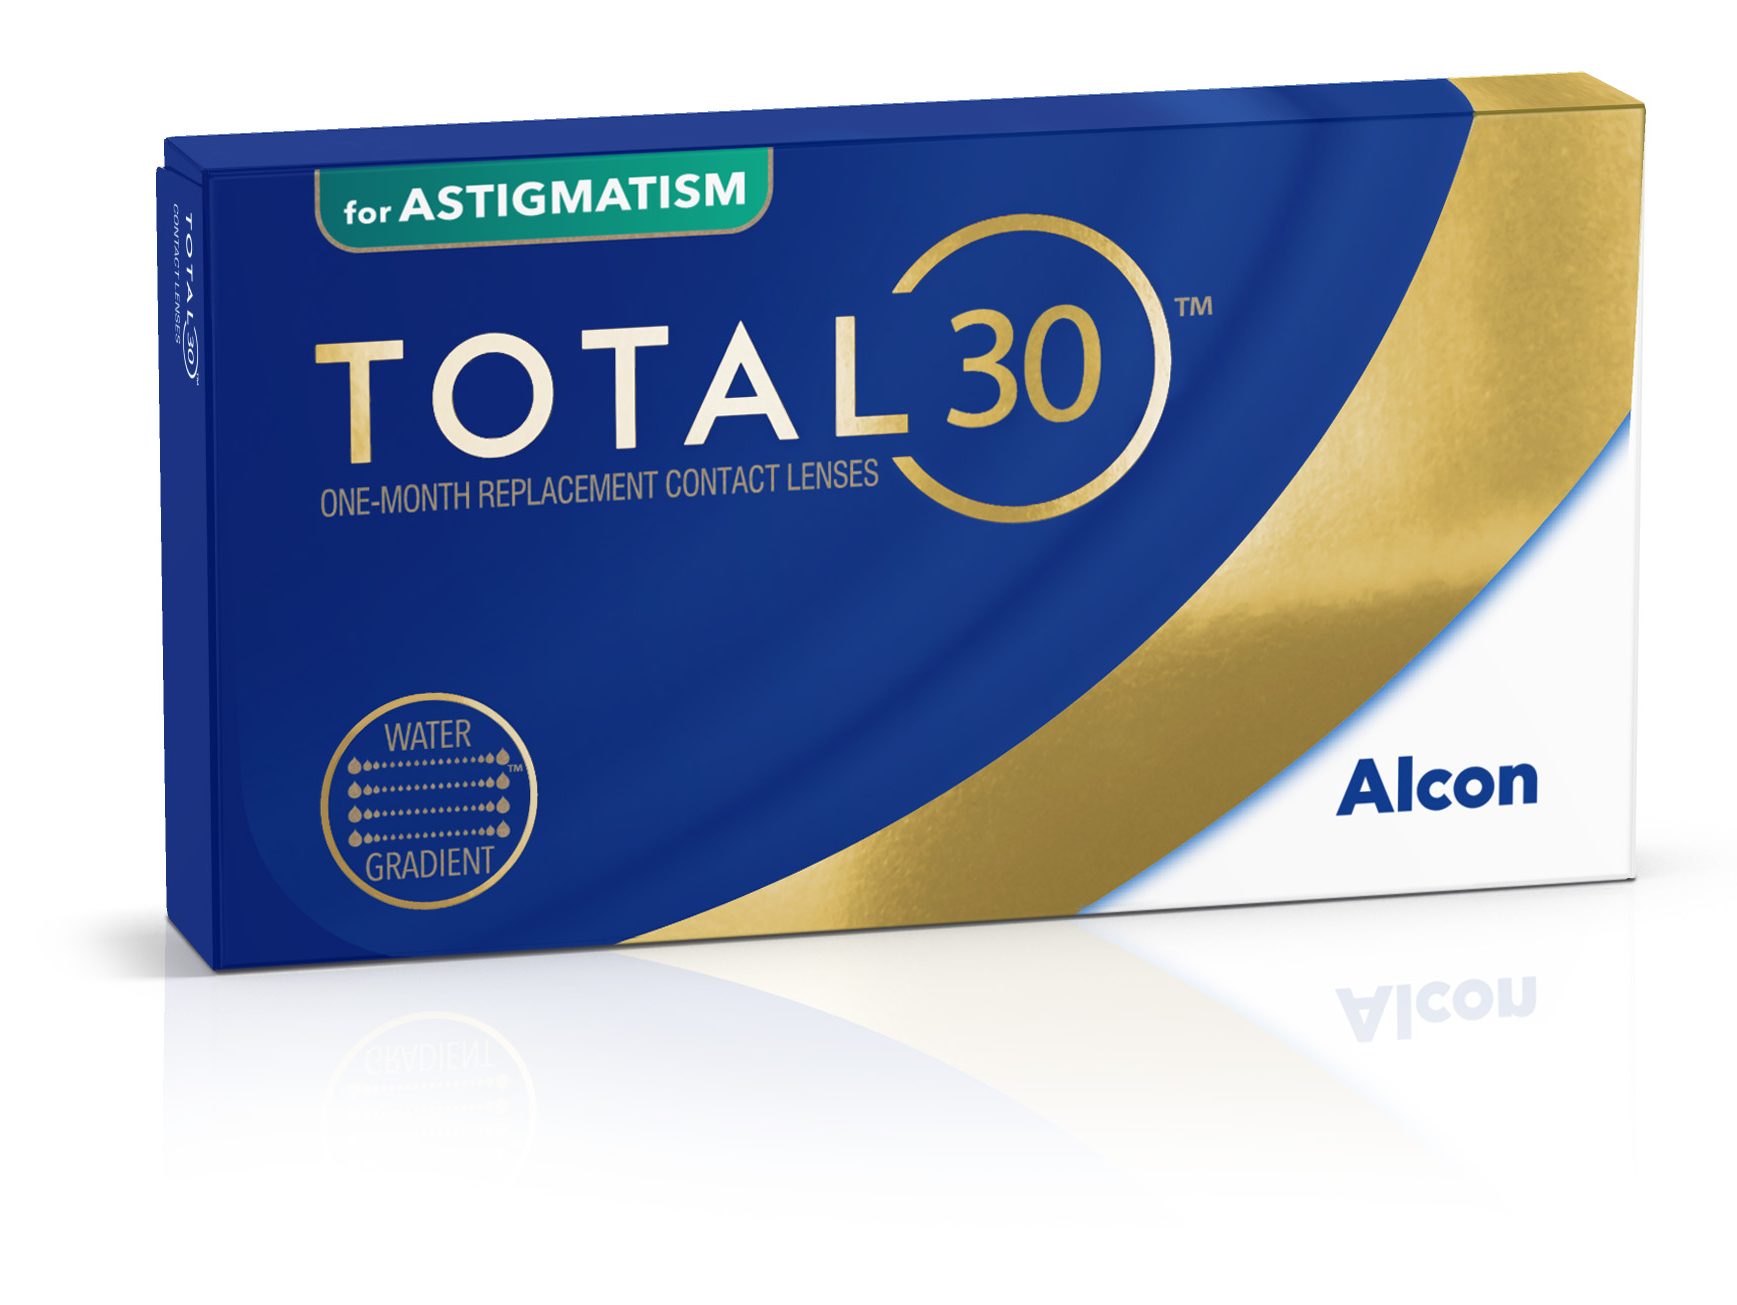 Torische Monatskontaktlinse Total30 for Astigmatism von Alcon